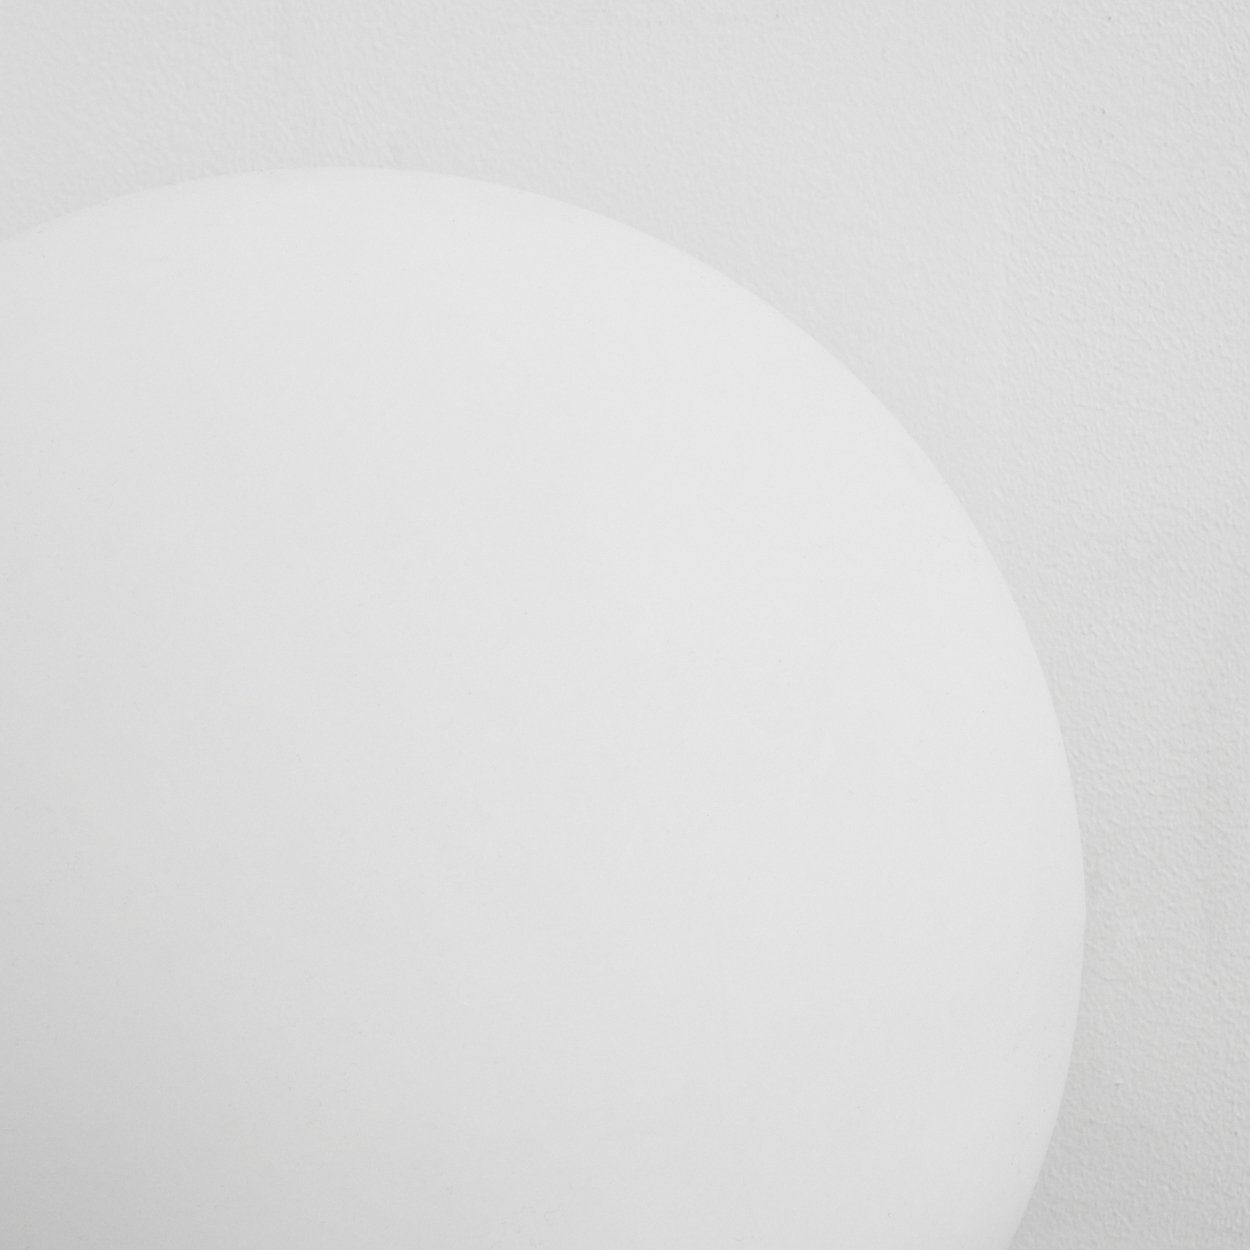 hofstein Stehlampe 6500 mit Lumen Nickel-matt/Weiß, Farbwechsler, änderbar Metall/Kunststoff Kelvin, »Turrida« Fernbedienung, 1055 aus LED, RGB in dimmbar/ Kugelleuchte